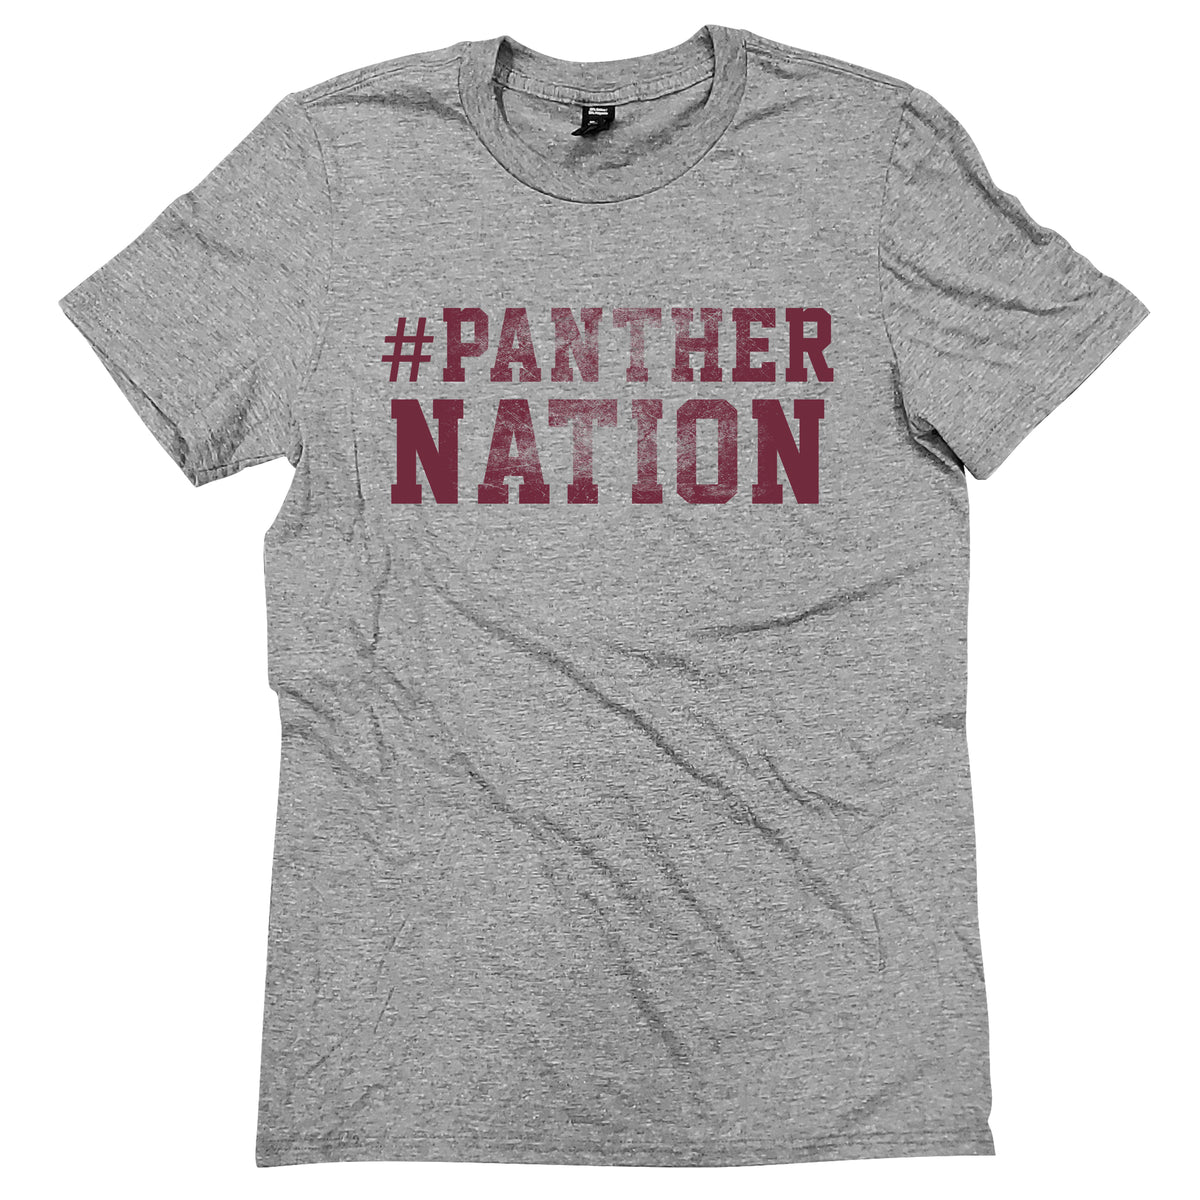 Benton #Panther Nation tee